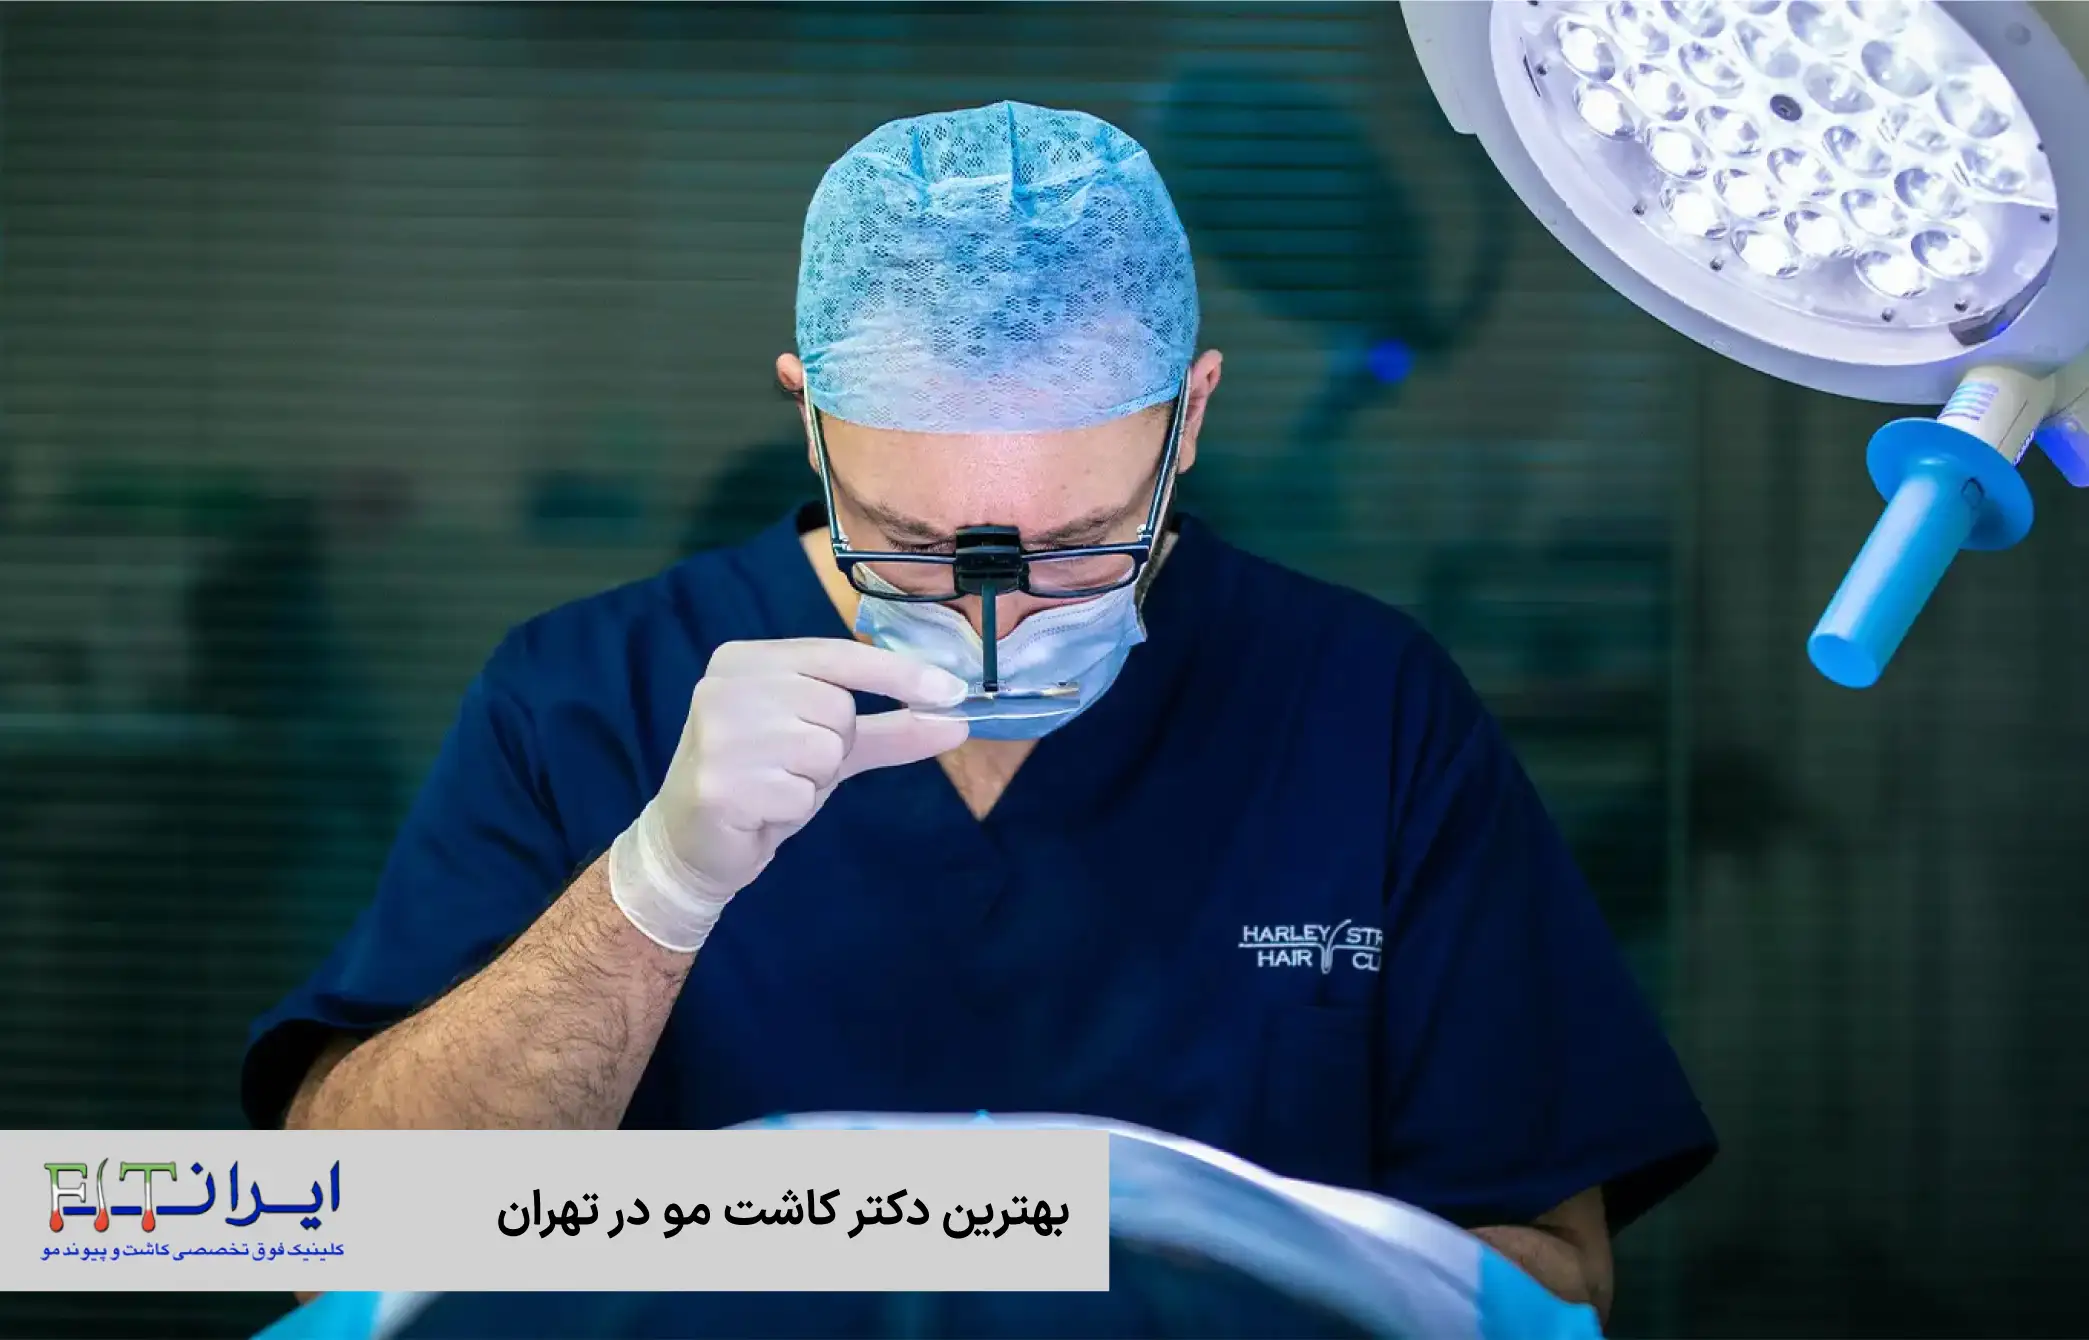 بهترین دکتر کاشت مو در تهران چه کسی است؟ | کلینیک تخصصی کاشت مو ایران فیت